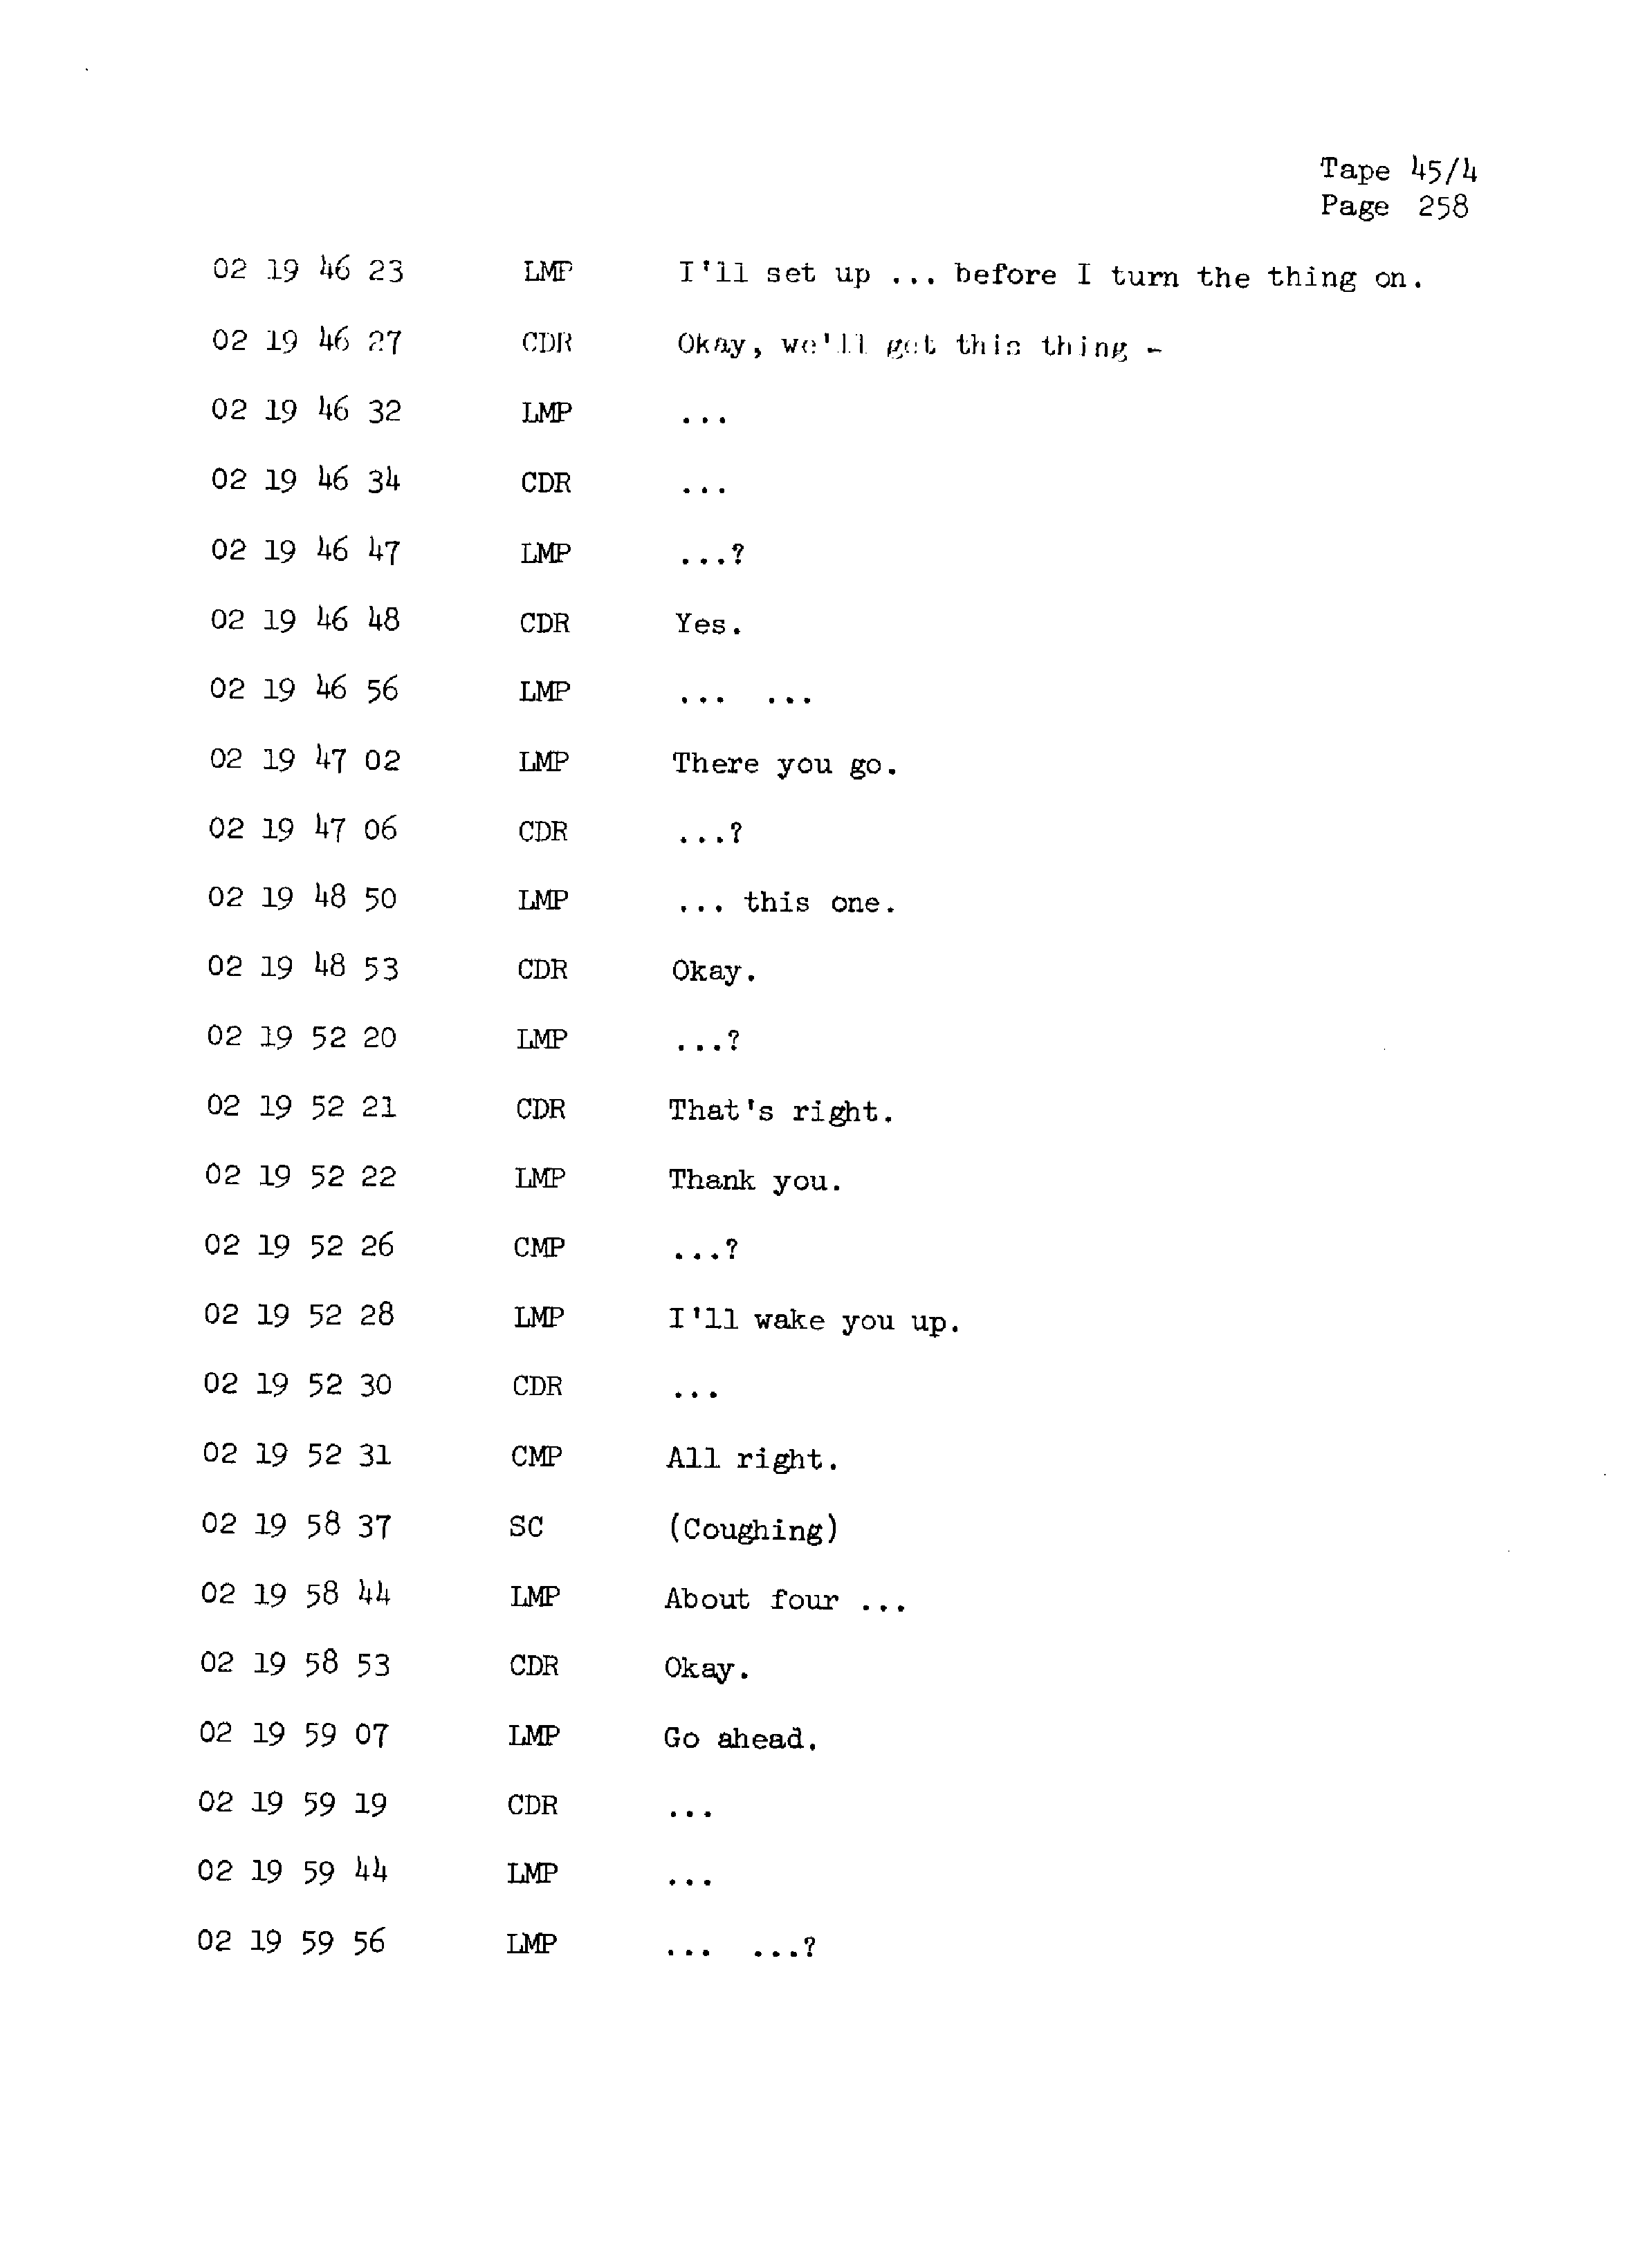 Page 265 of Apollo 13’s original transcript